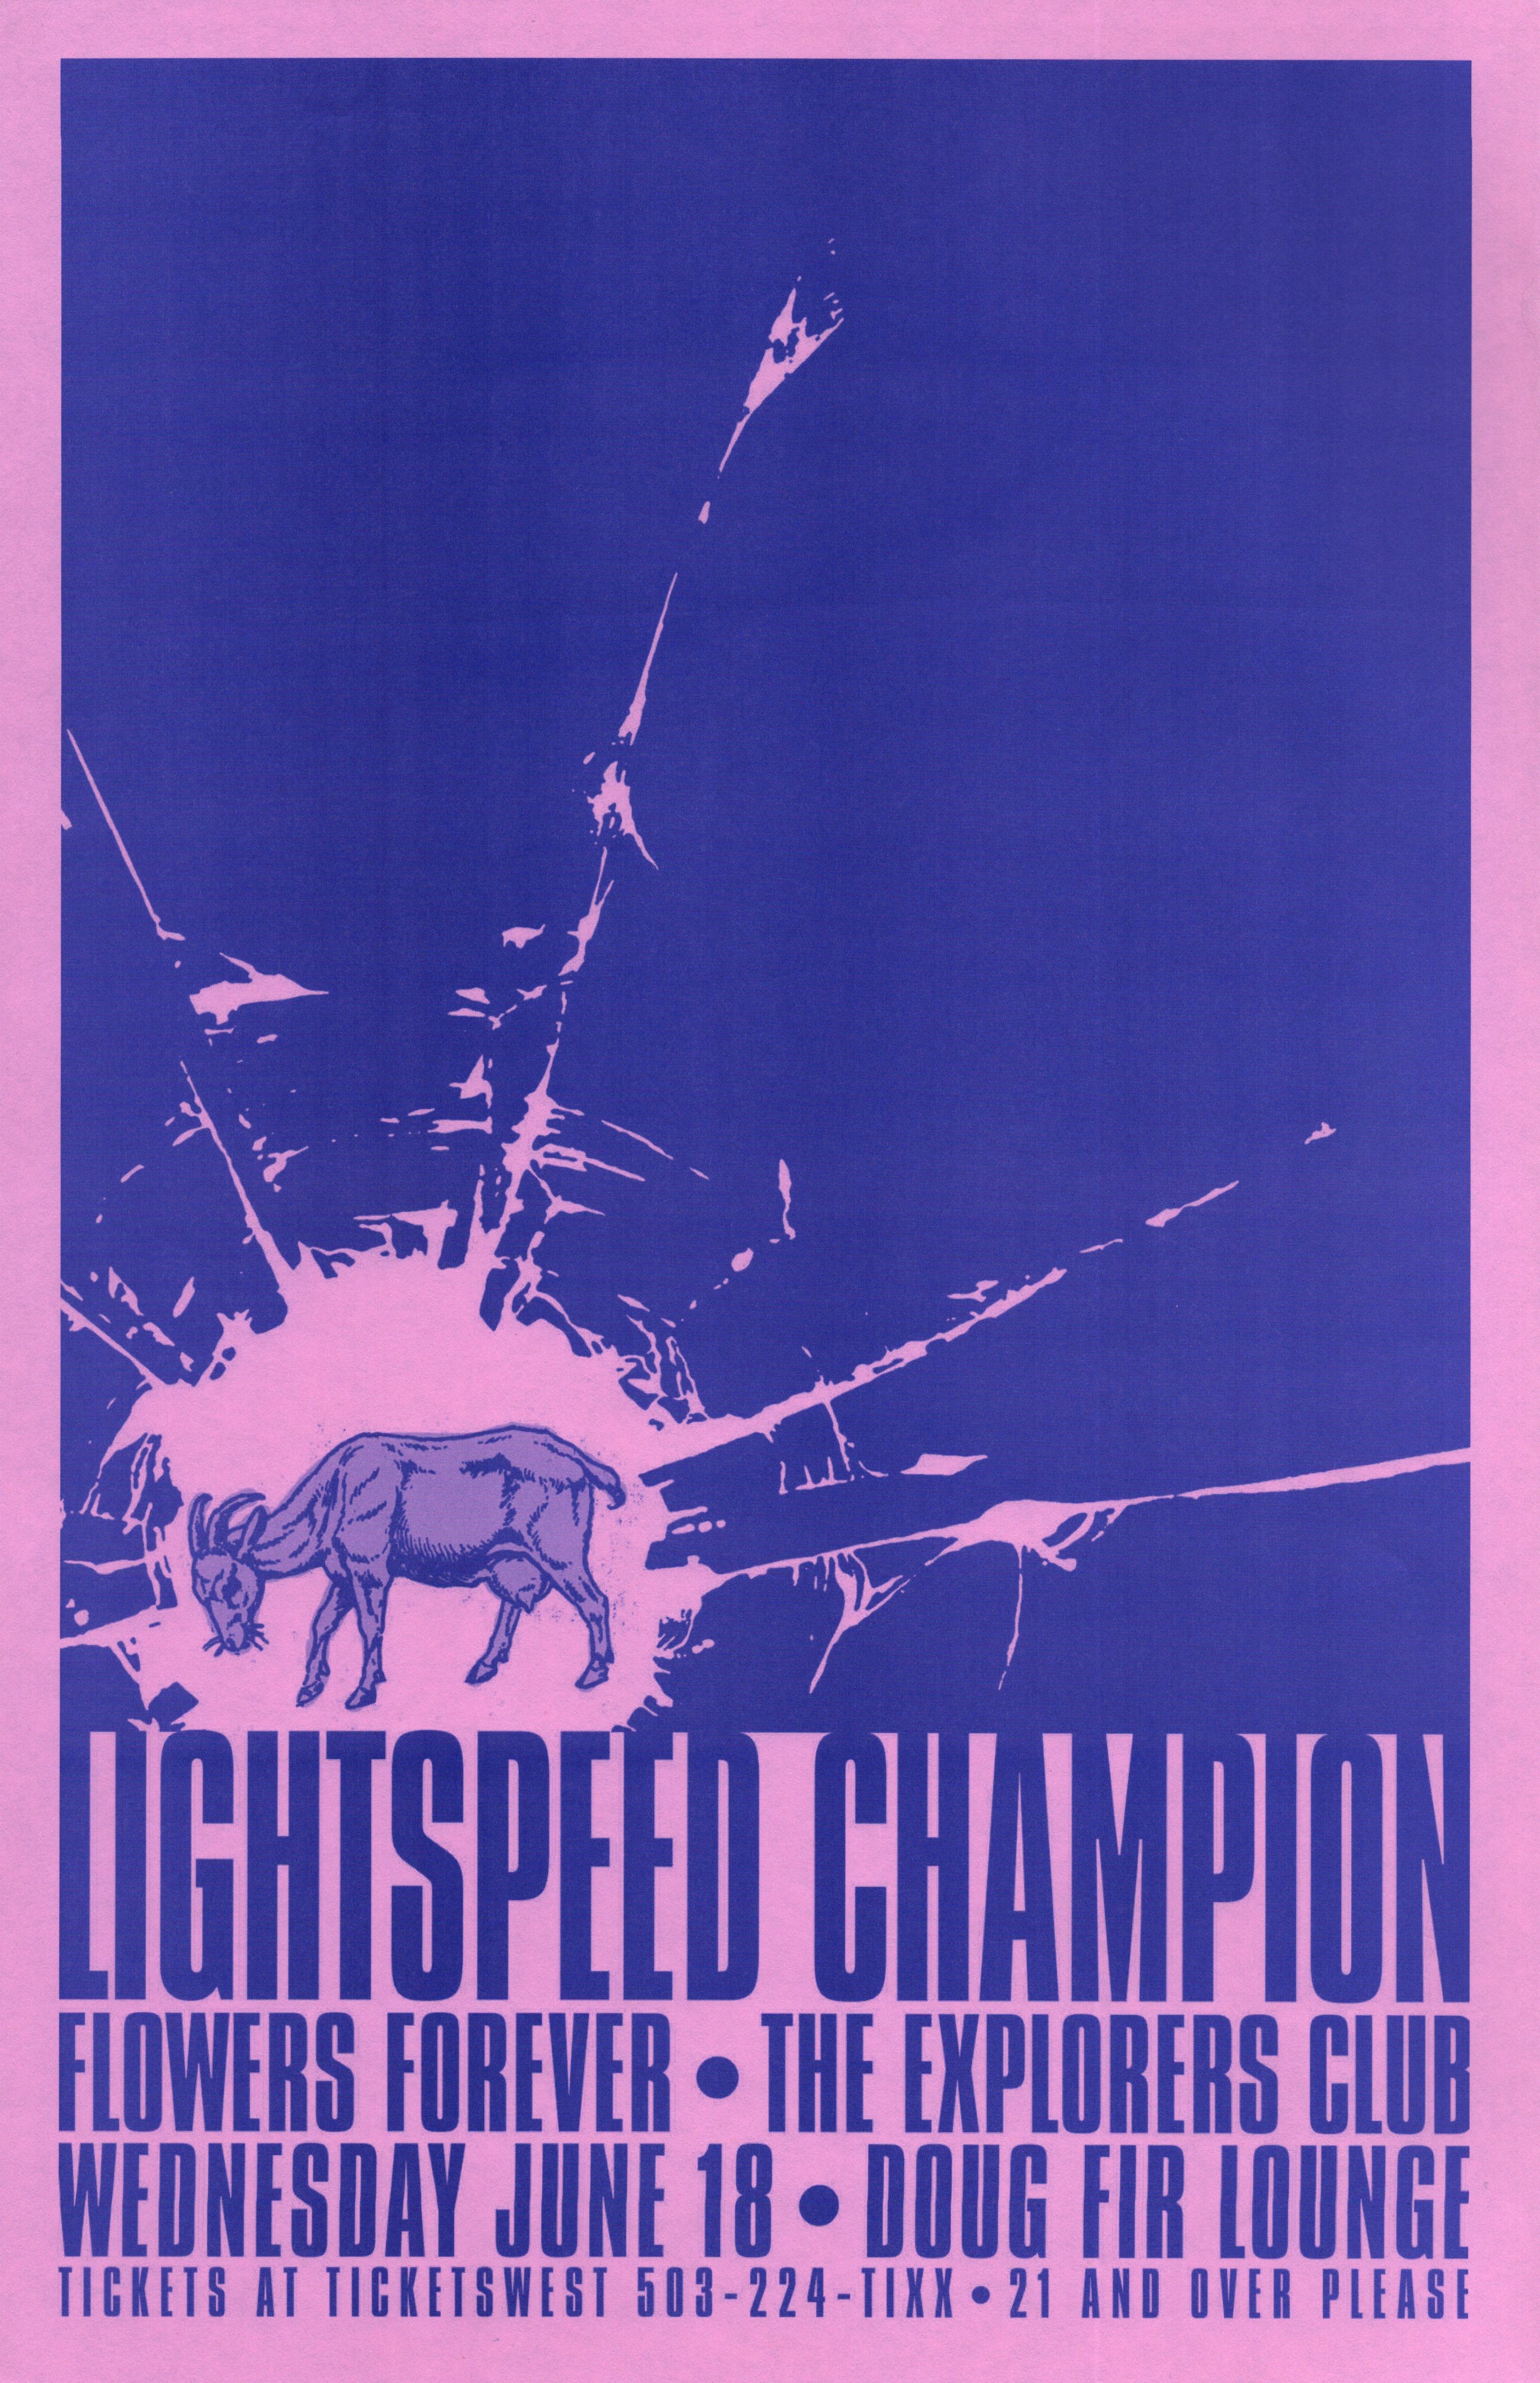 MXP-142.6 Lightspeed Champion 2008 Doug Fir  Jun 18 Concert Poster